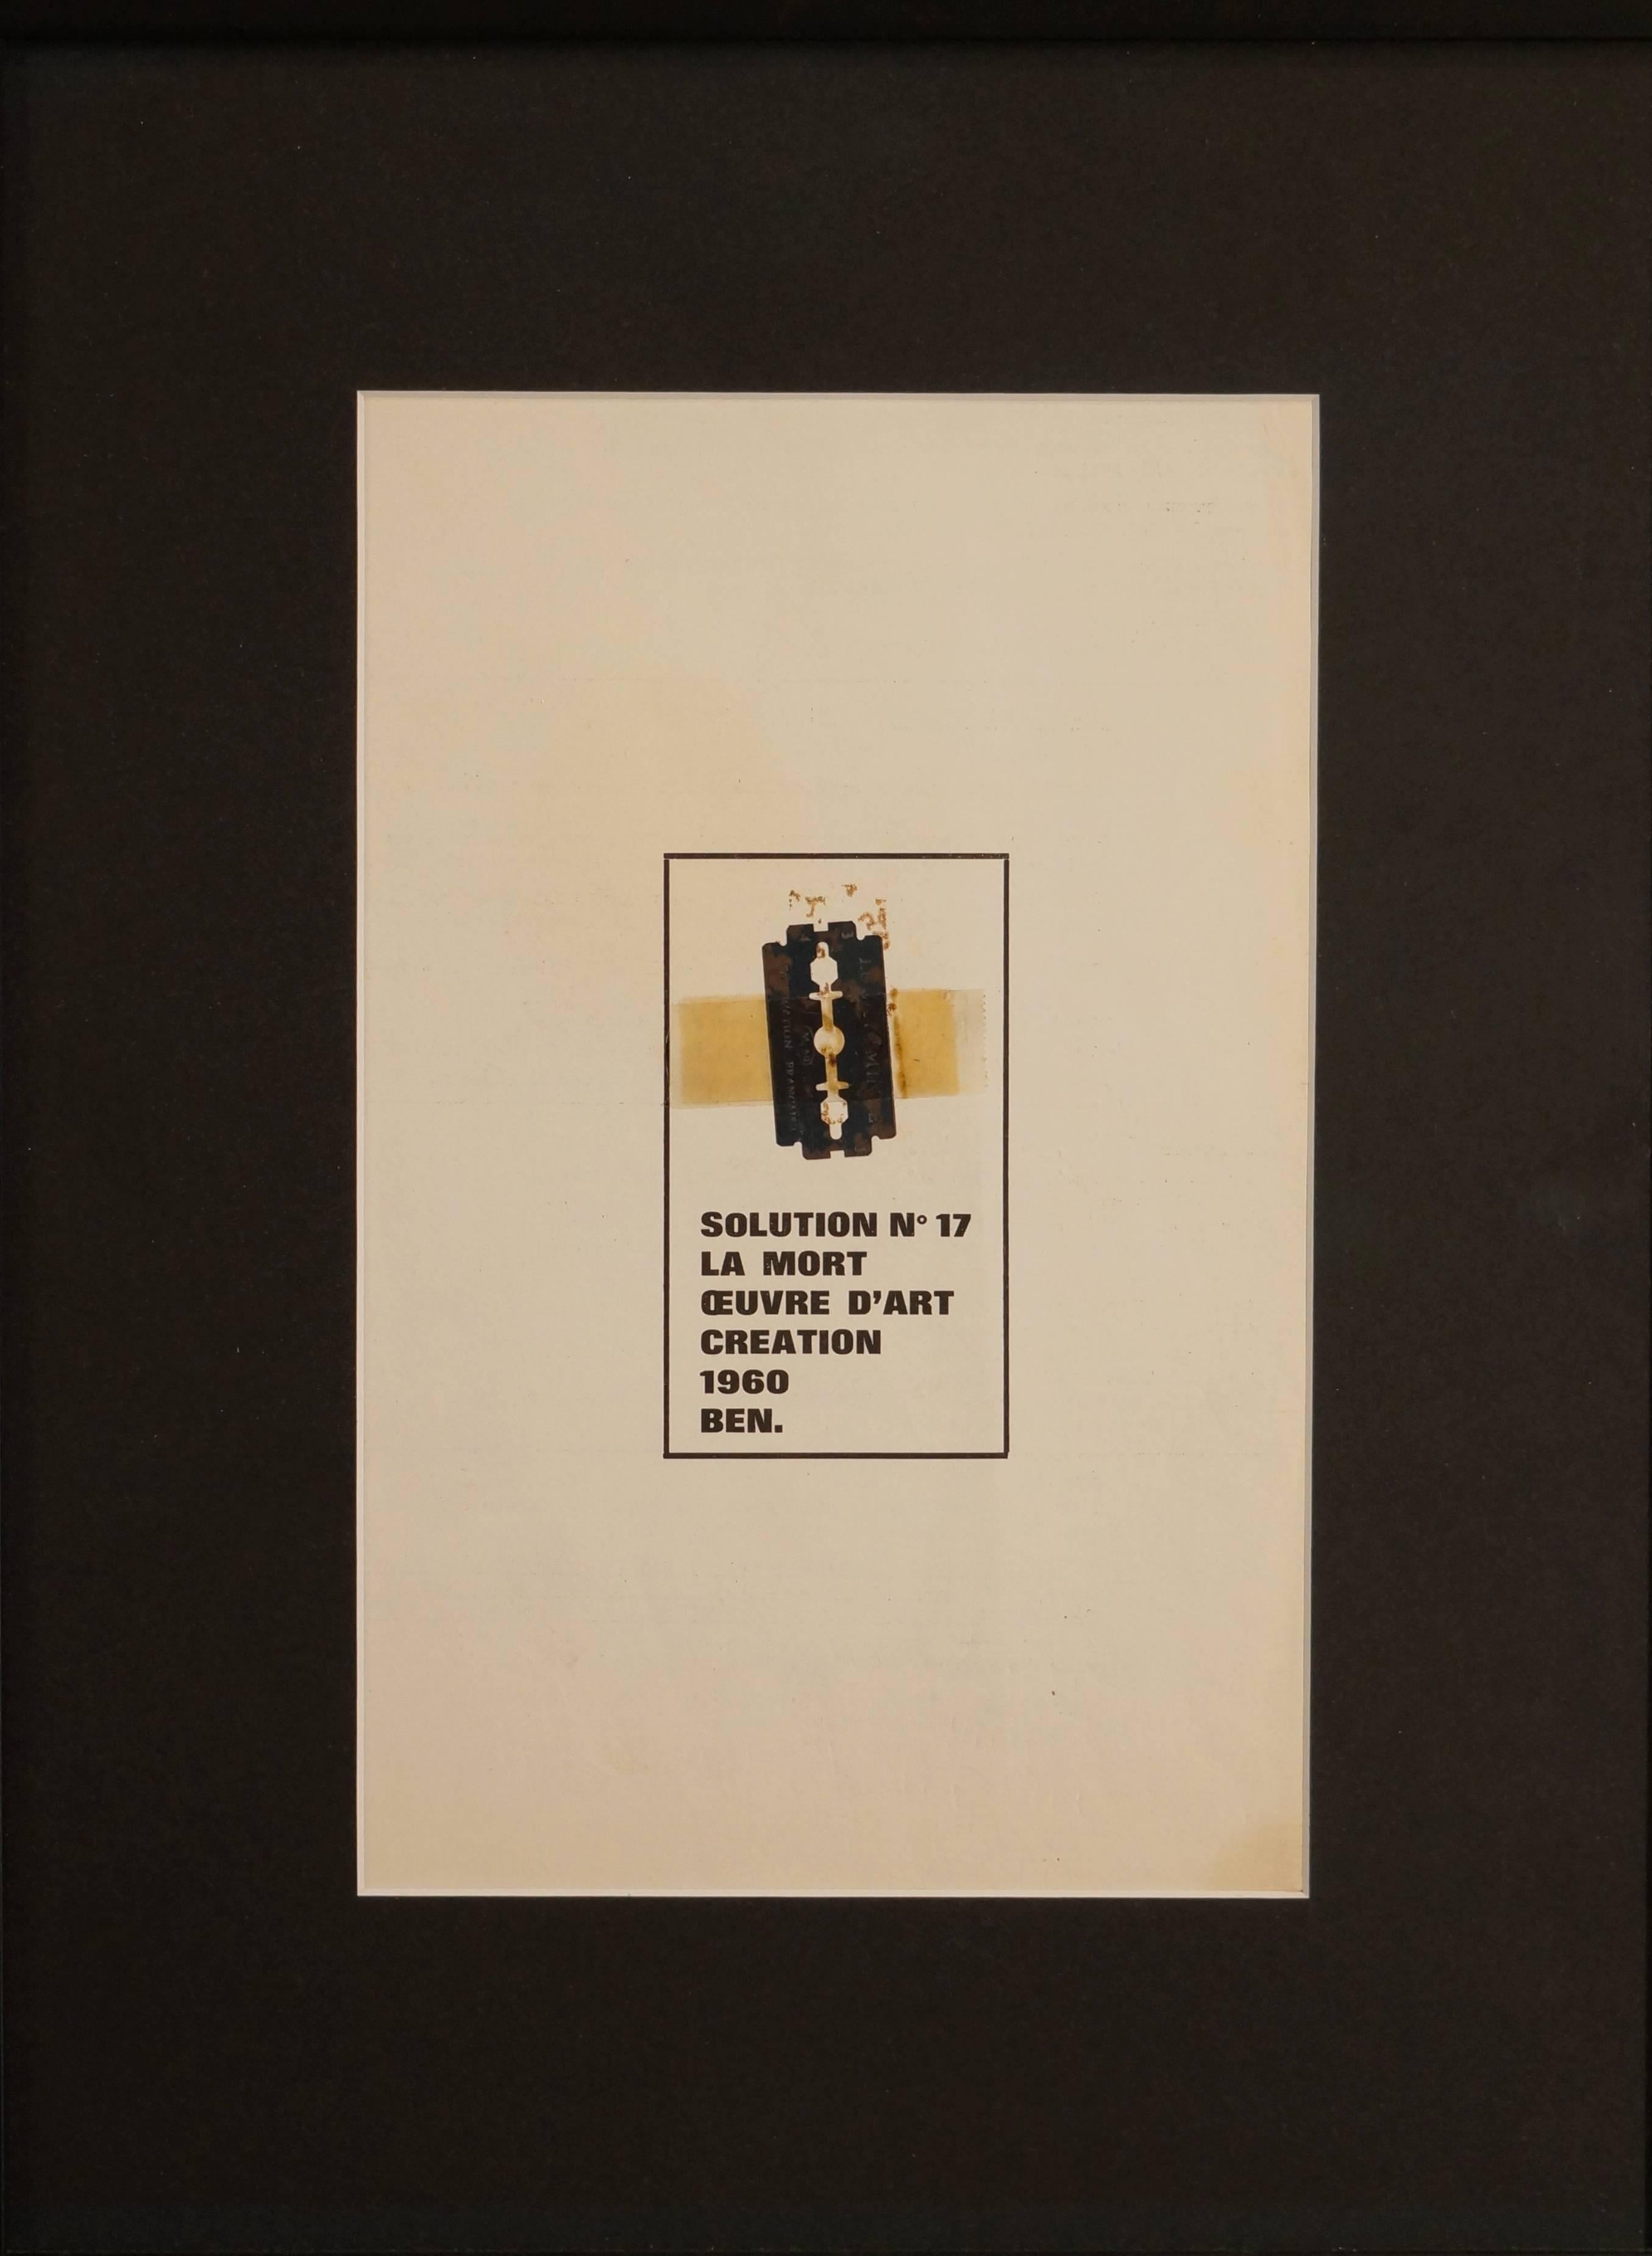 Solution 17, 1986 - mixed media, 45x34 cm., framed - Mixed Media Art by Ben